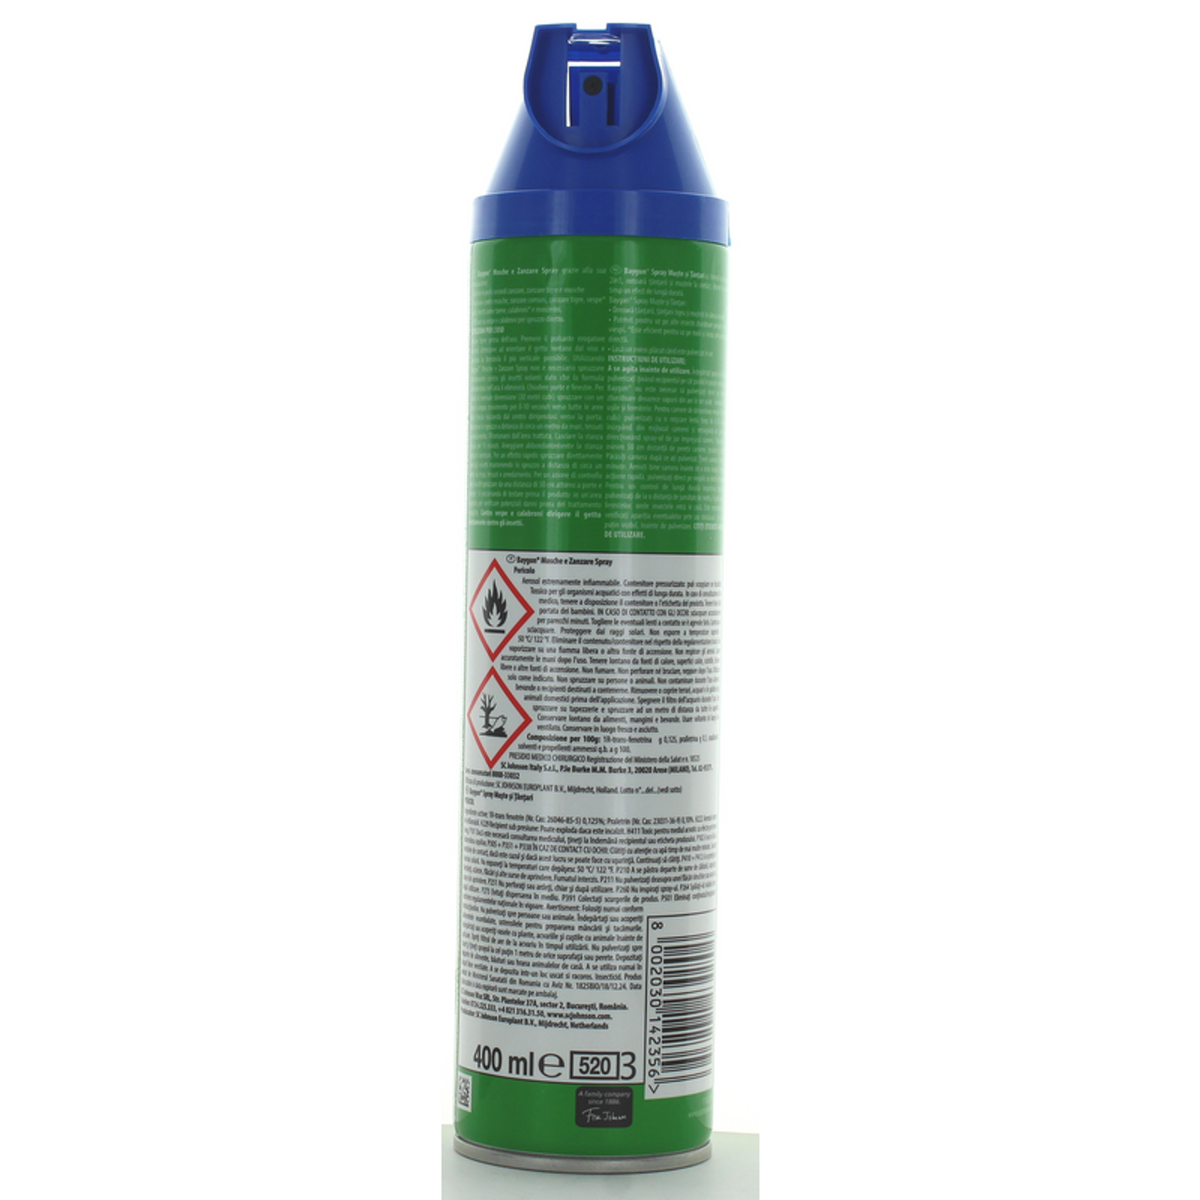 Blue Blue Insecticide Spray in komarji 400 ml